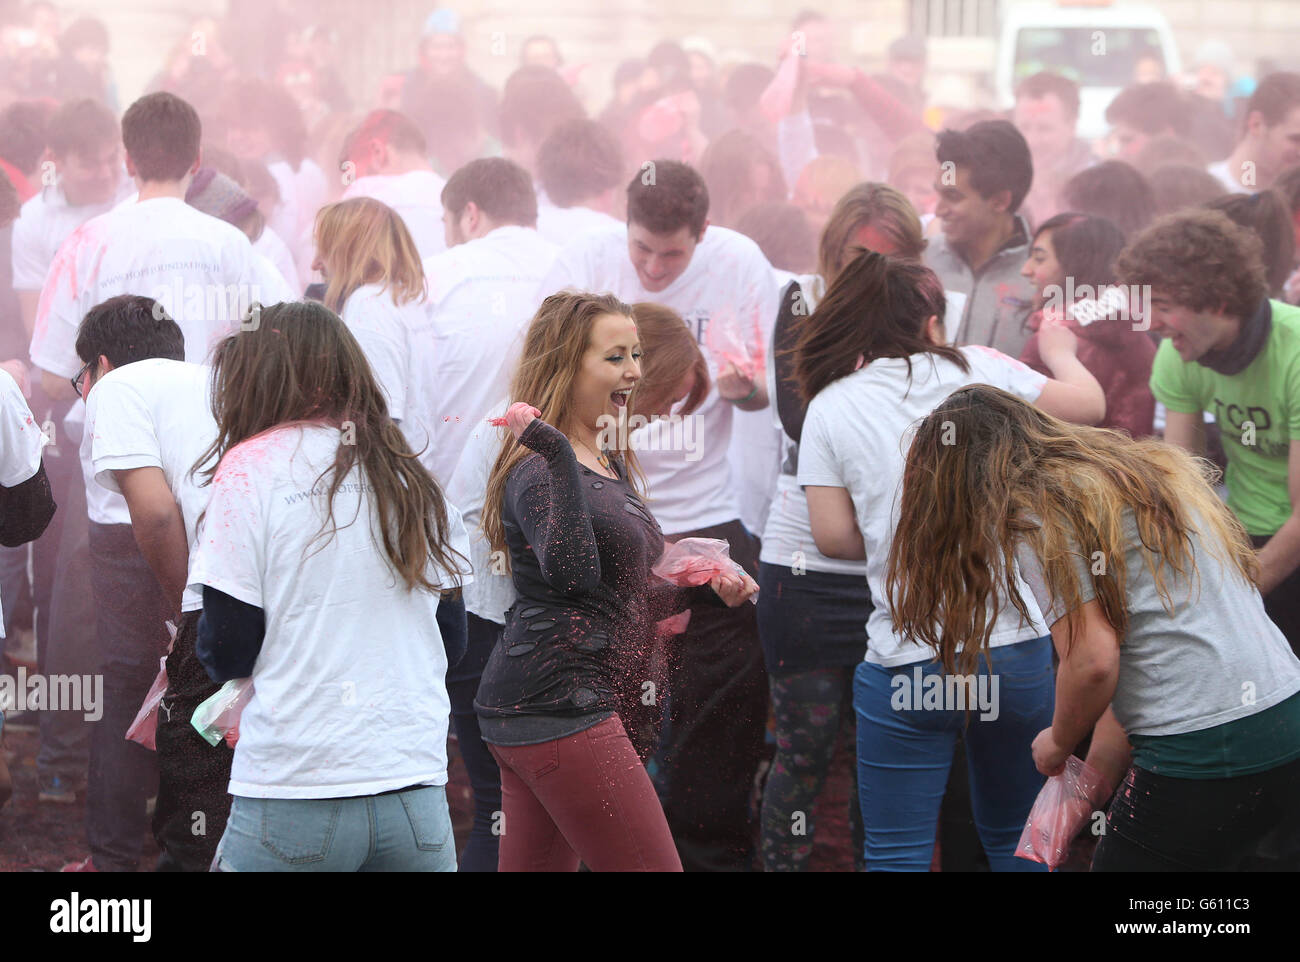 Hunderte von Trinity-Studenten feiern Holi, das Indian Festival of Colors, heute auf dem College Front Square in Dublin, Irland. DRÜCKEN Sie VERBANDSFOTO. Bilddatum: Mittwoch, 27. März 2013. DRÜCKEN Sie VERBANDSFOTO. Bilddatum: Mittwoch, 27. März 2013.Bildnachweis sollte lauten: Niall Carson/PA Wire Stockfoto